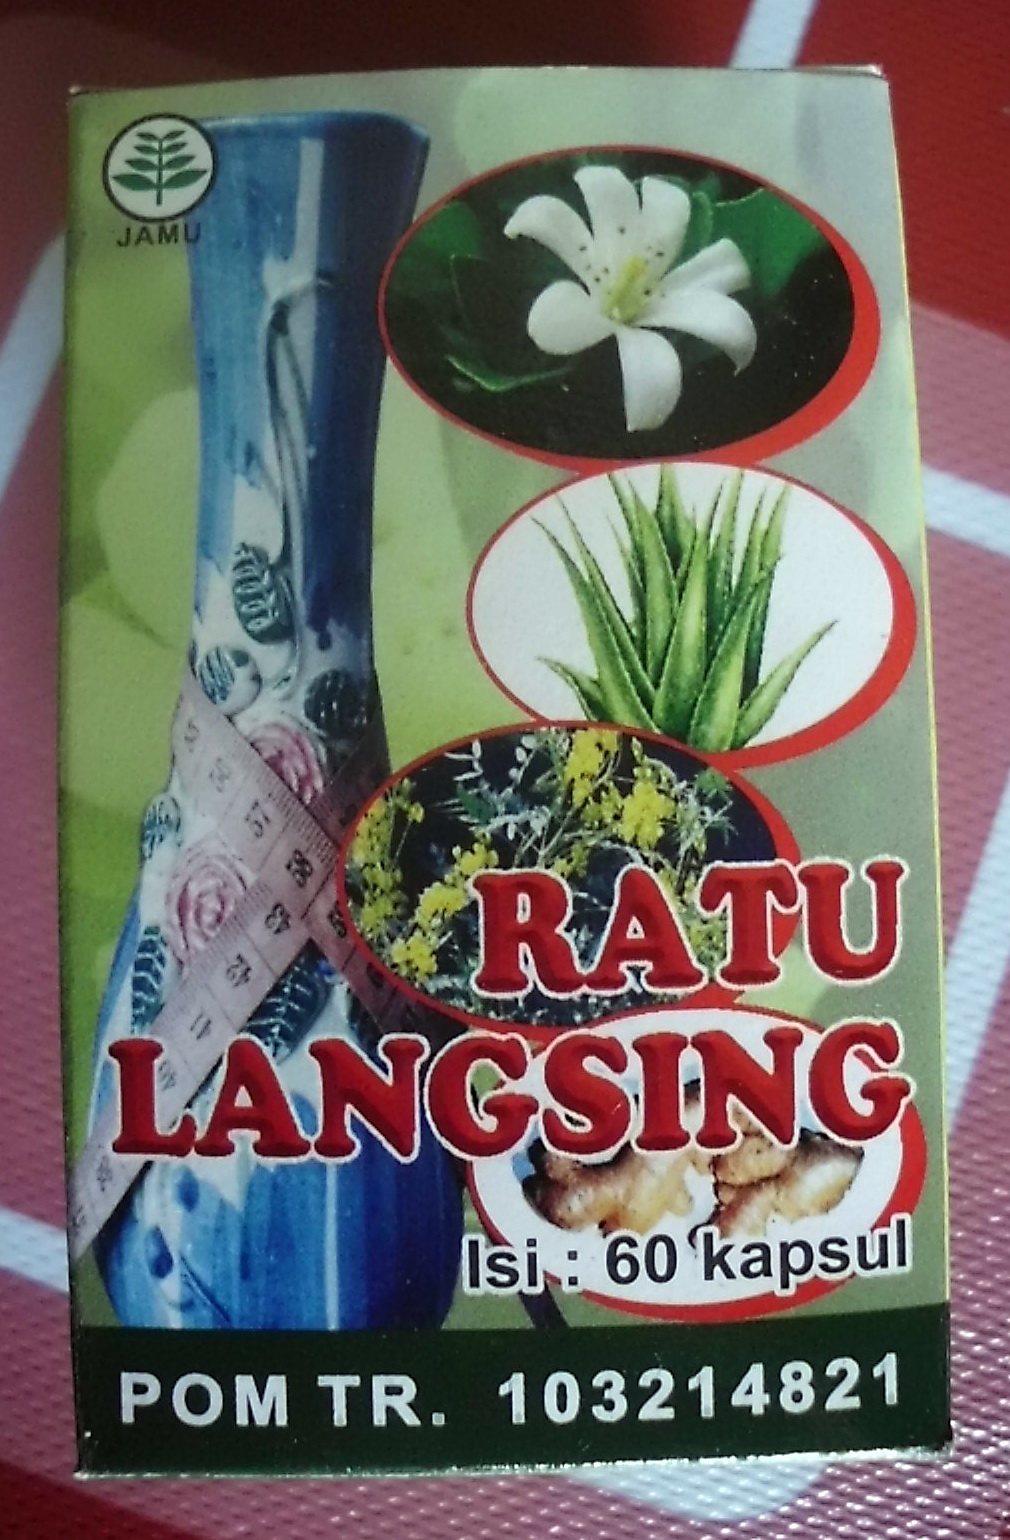 Grosir Herbal Tangerang: alamat toko obat herbal di ...